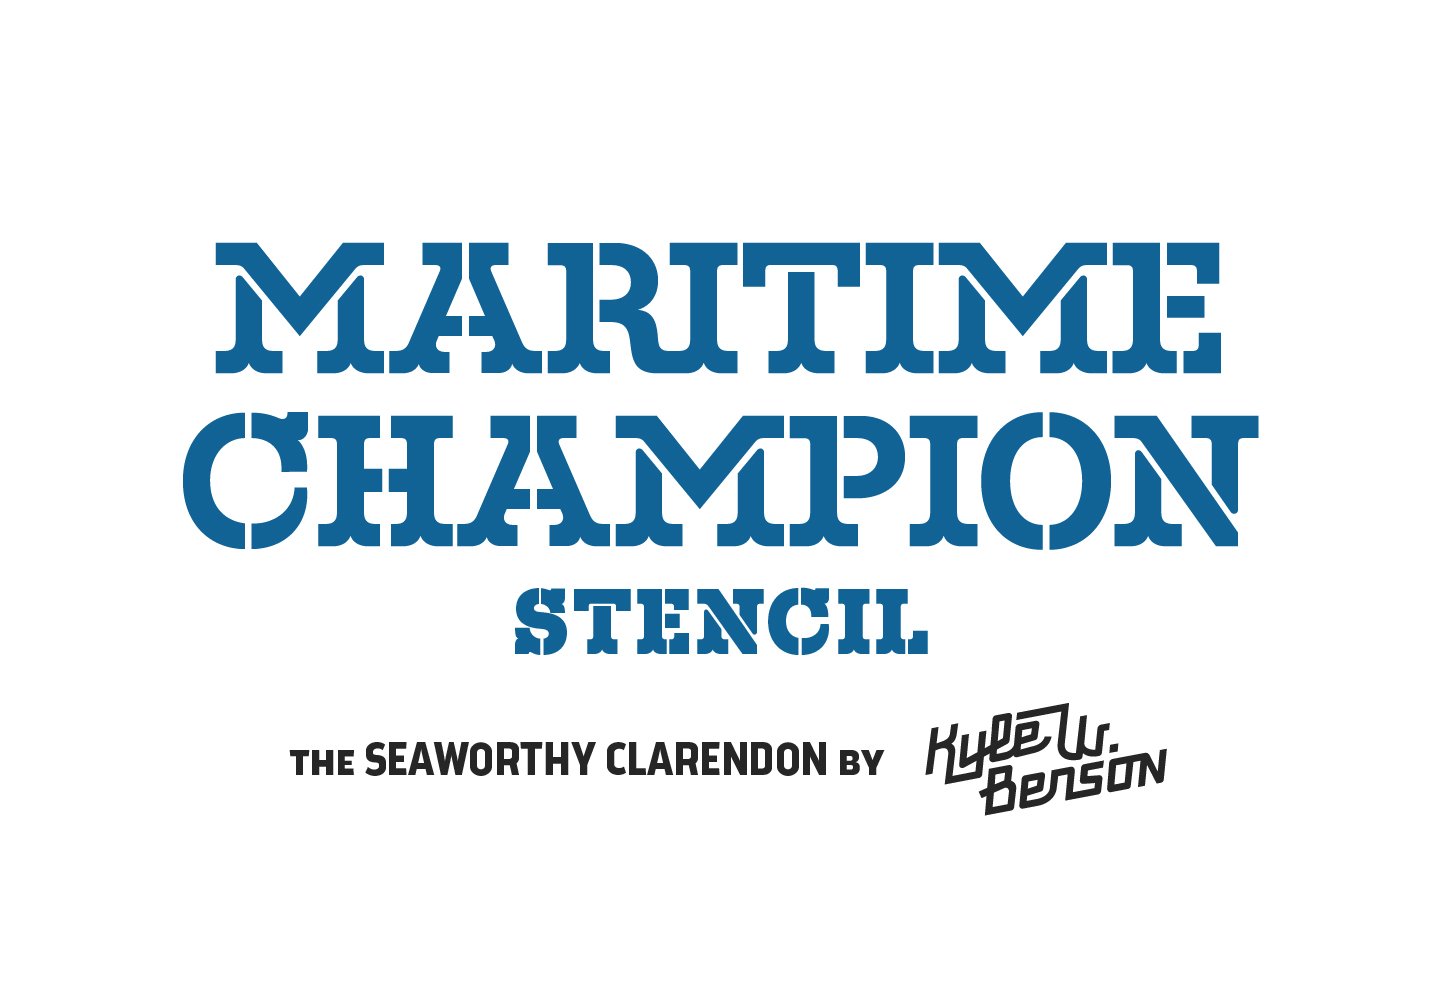 Maritime Champion Stencil cover image.